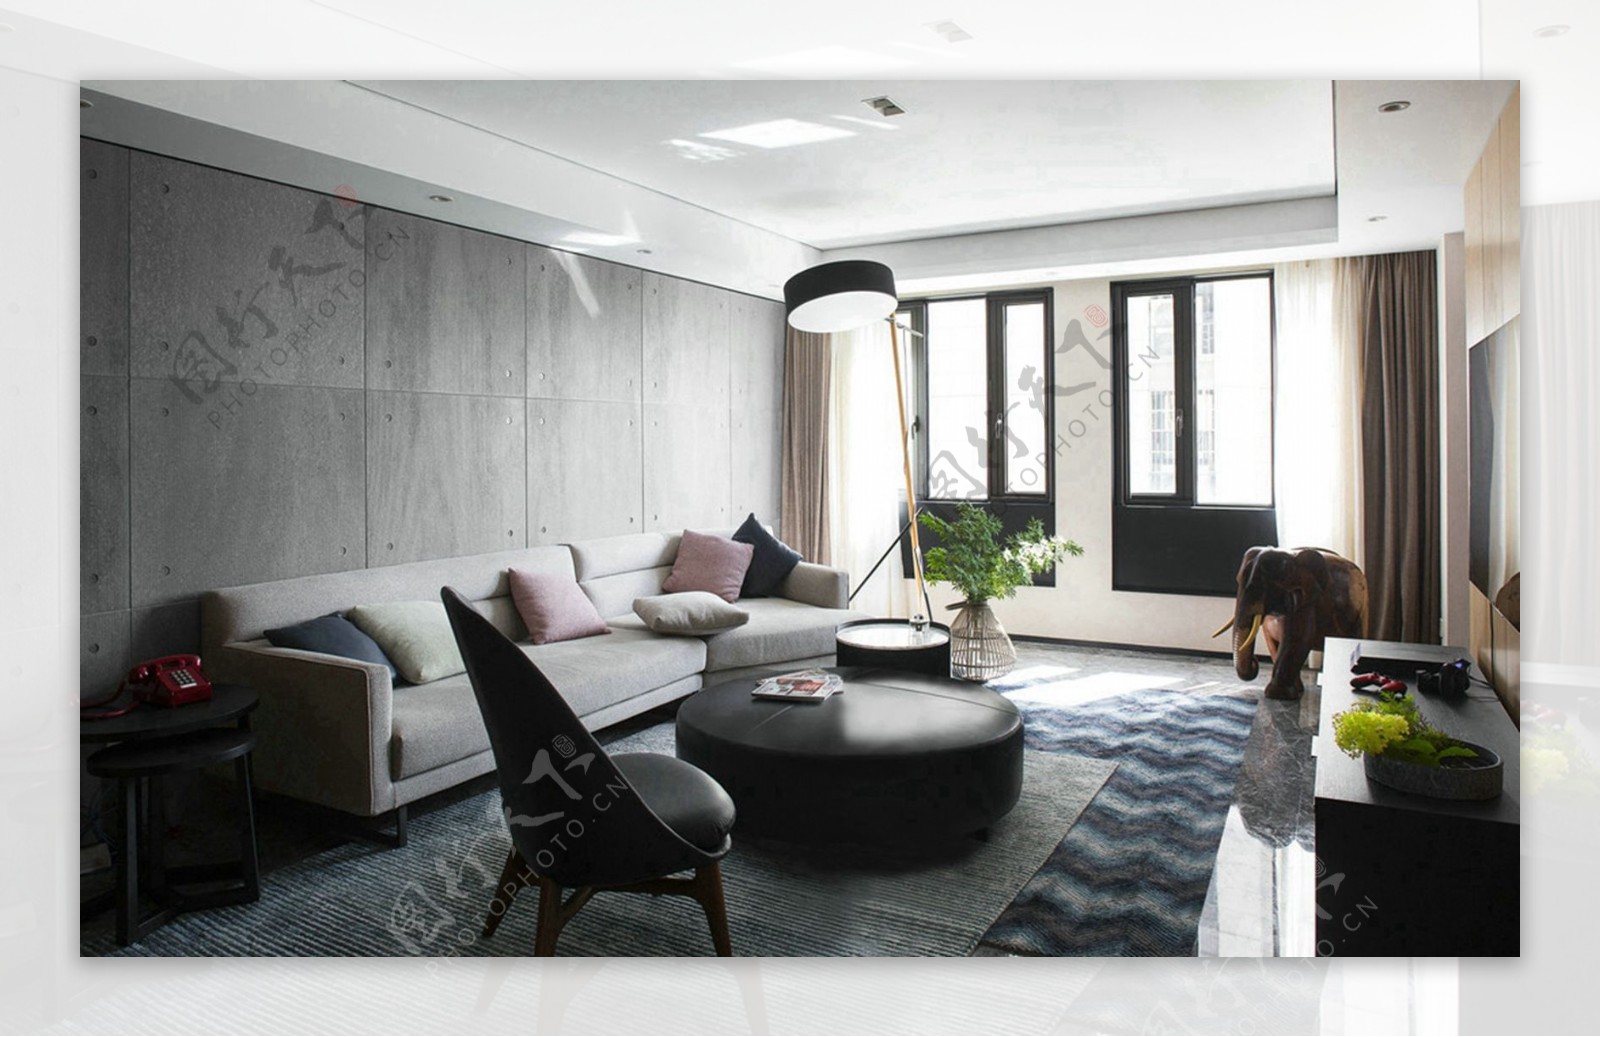 简约时尚客厅灰色沙发背景装修效果图